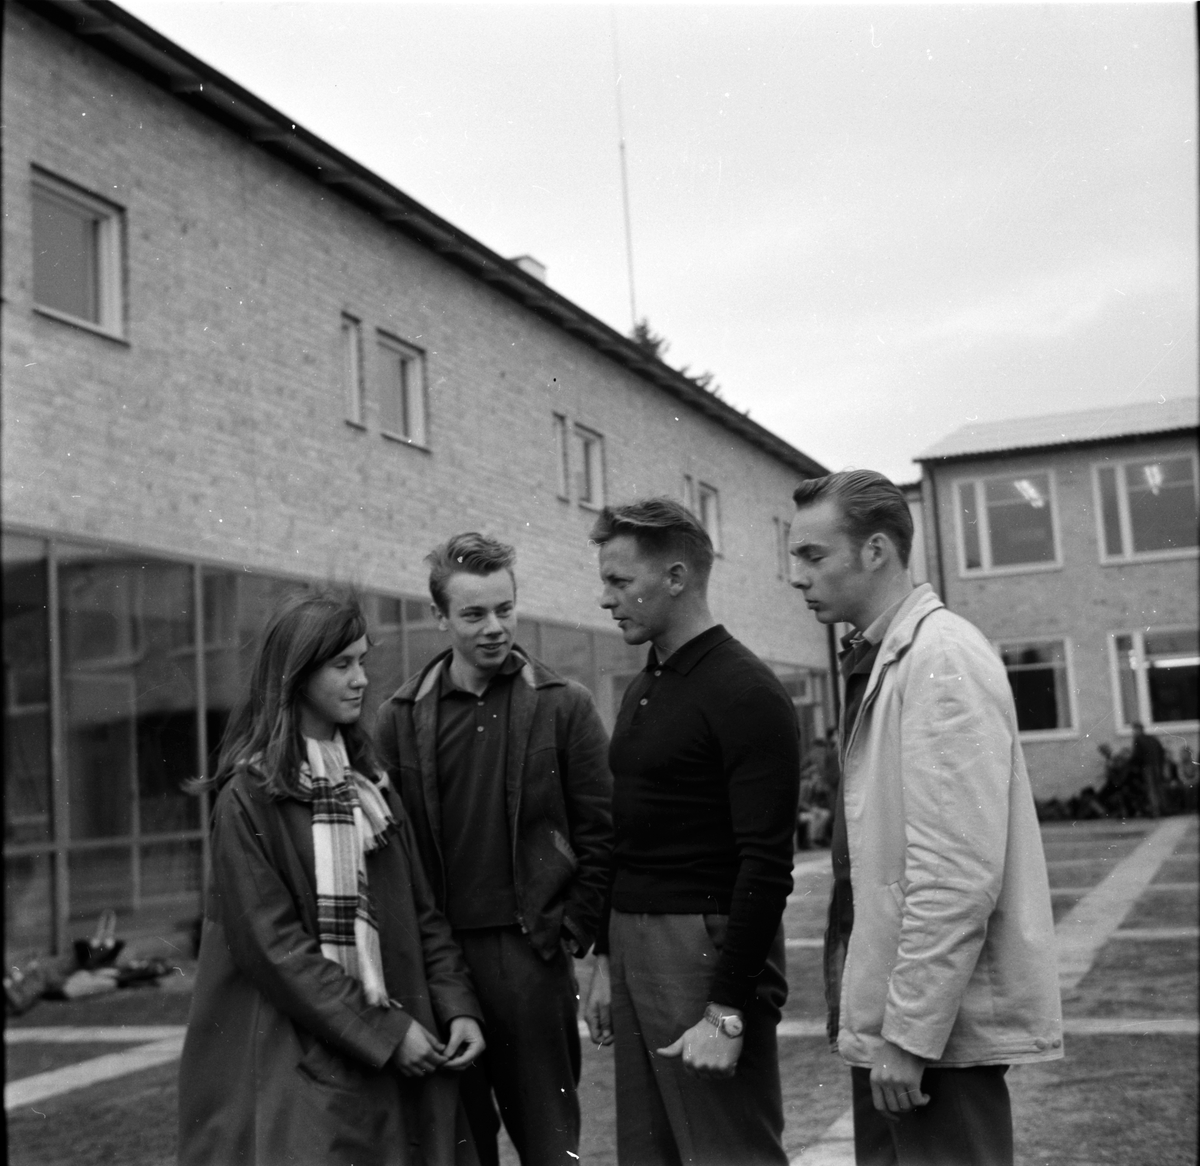 Bollnäs,
Granberg skolan,
23 Oktober 1961